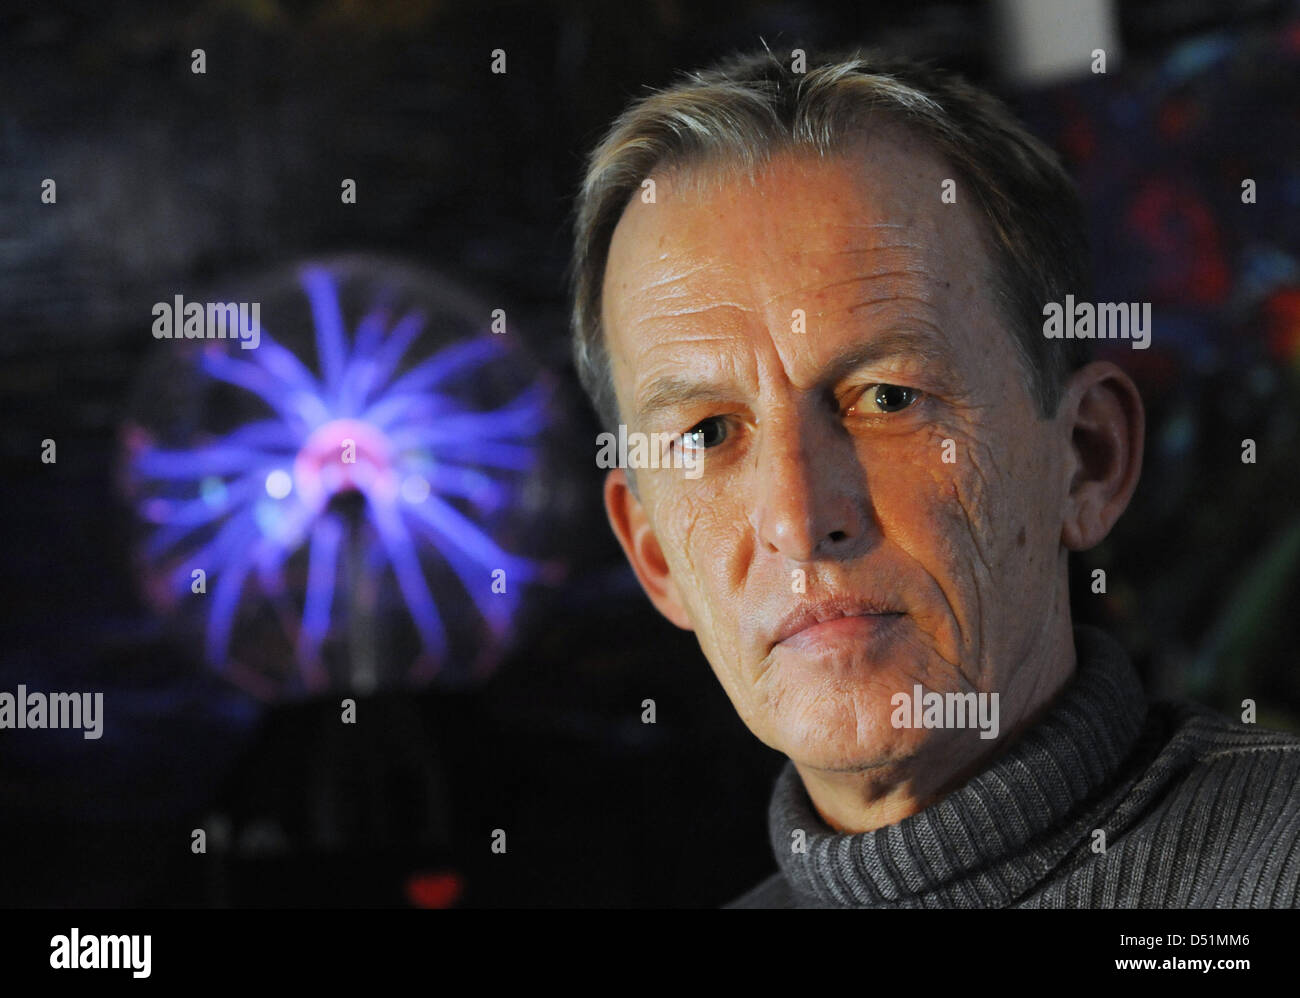 Astrologist Alexander Kopitkow poses with a plasma lamp in Filderstadt, Germany, 21 December 2010. He predicts a stable Euro for 2011. Photo: Marijan Murat - astrologist-alexander-kopitkow-poses-with-a-plasma-lamp-in-filderstadt-D51MM6